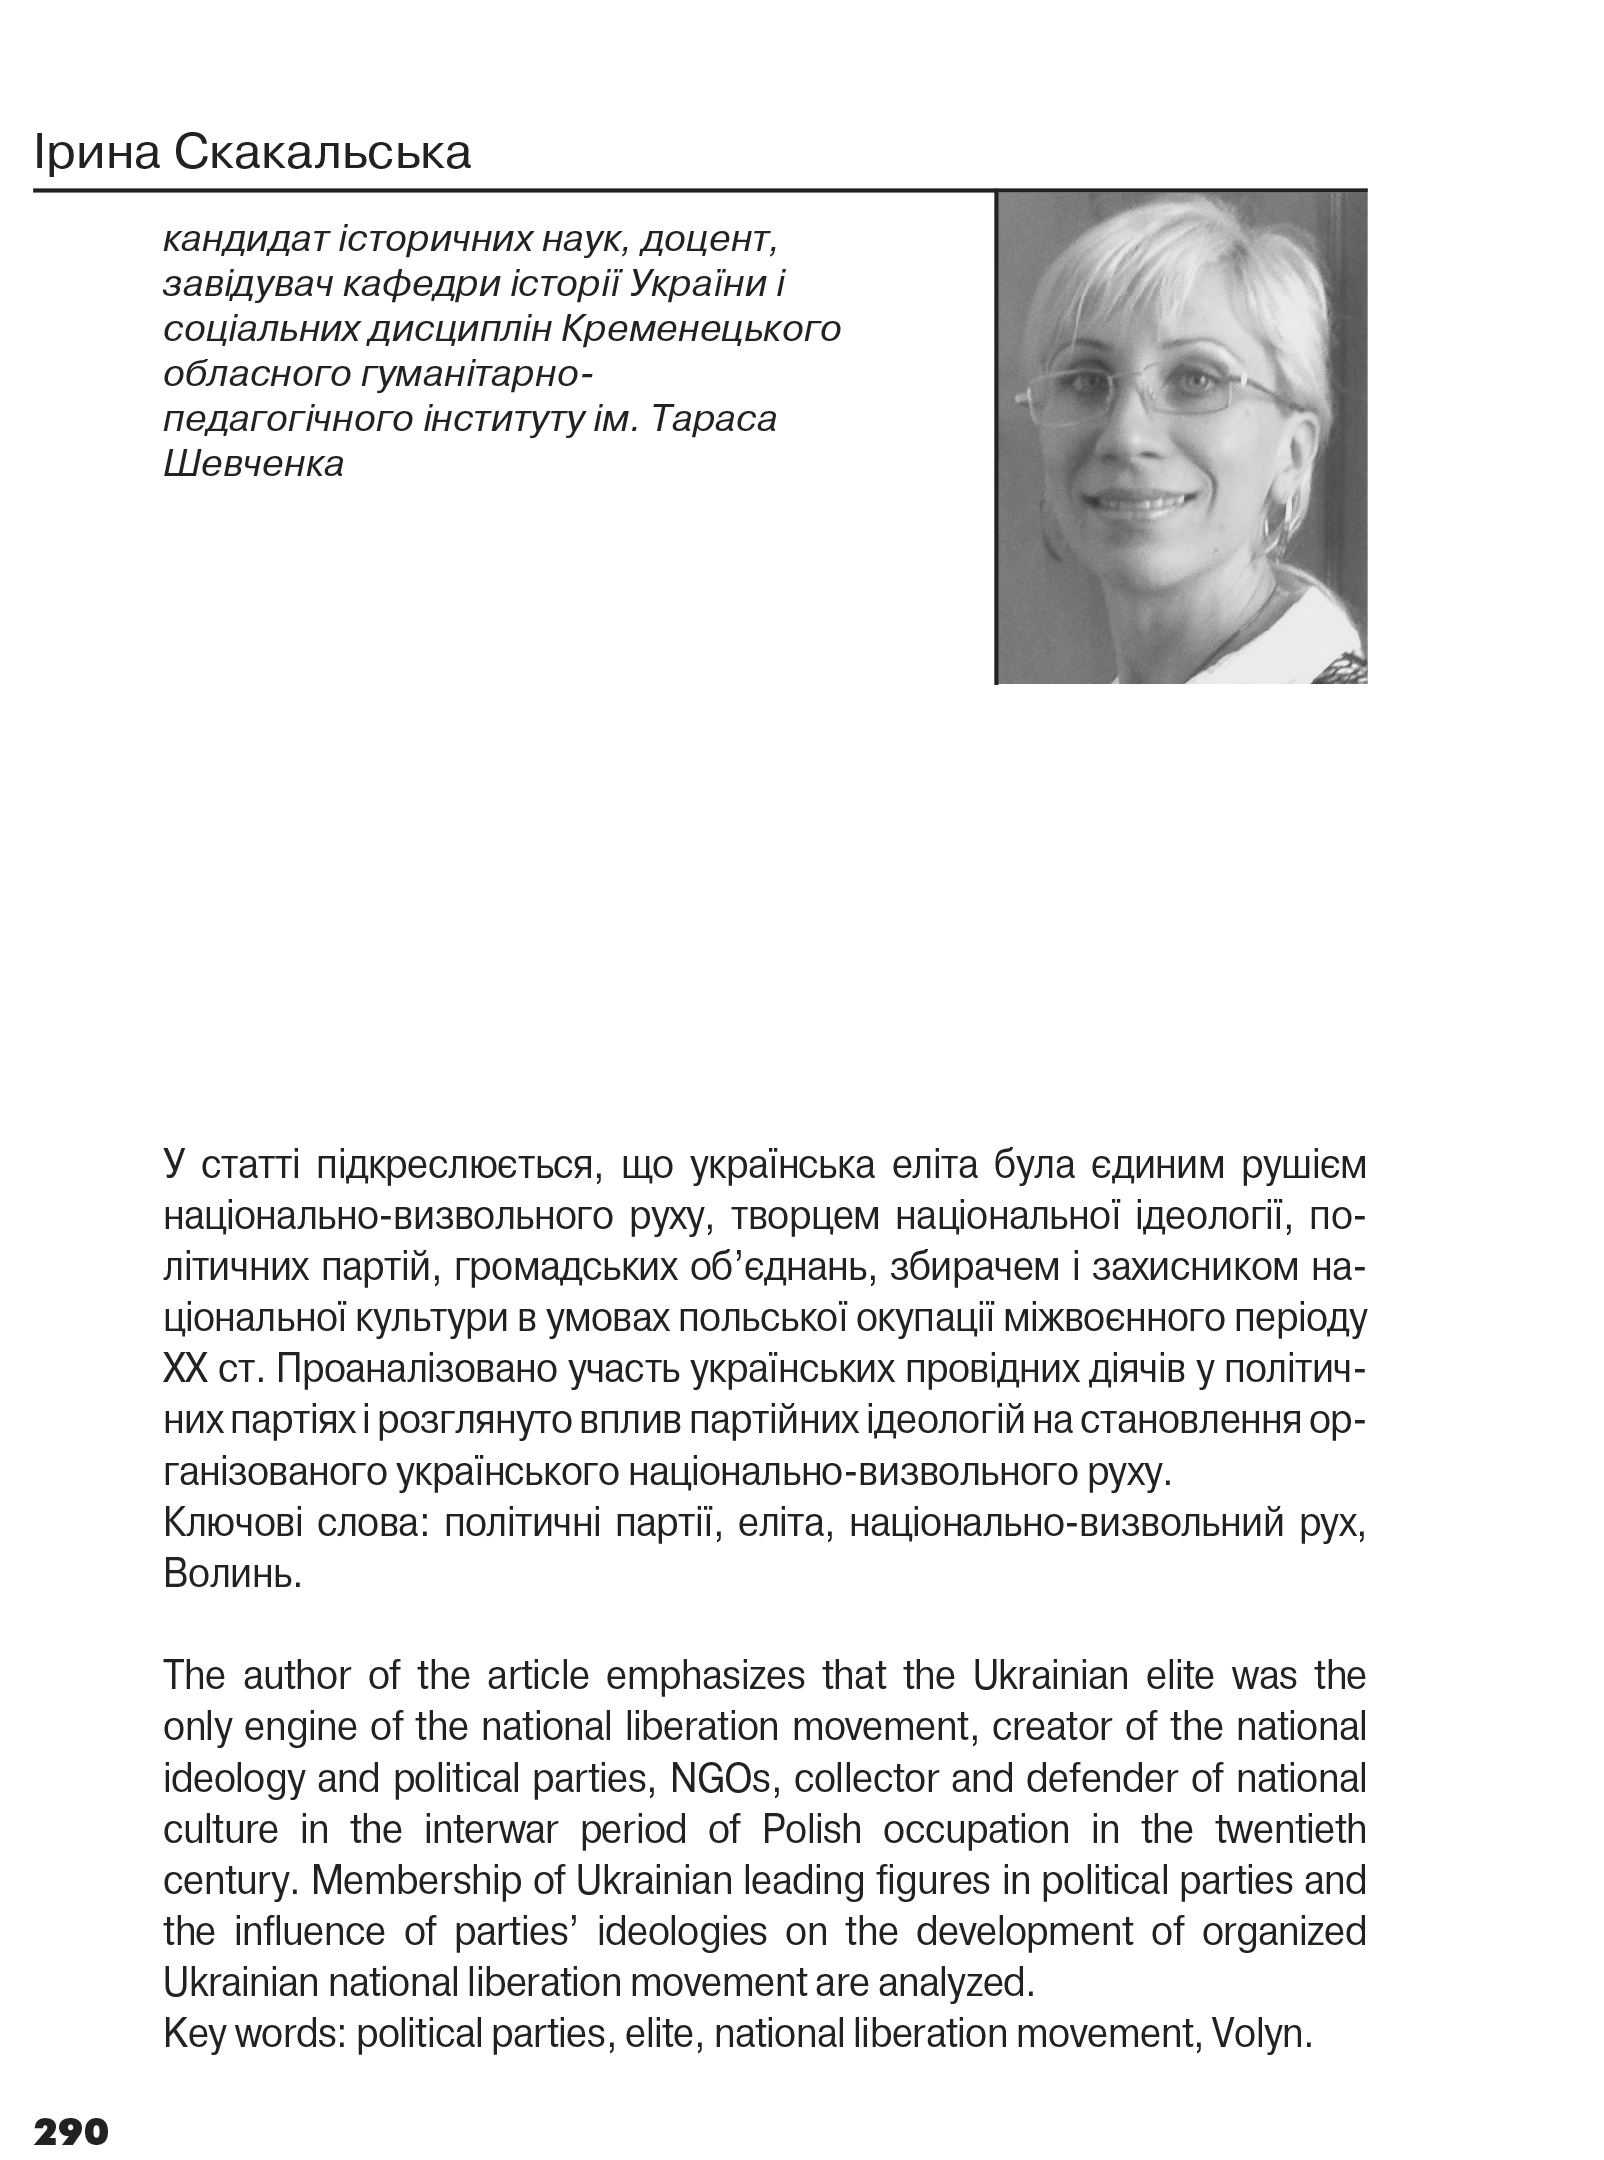 Український визвольний рух №16, ст. 290 - 311